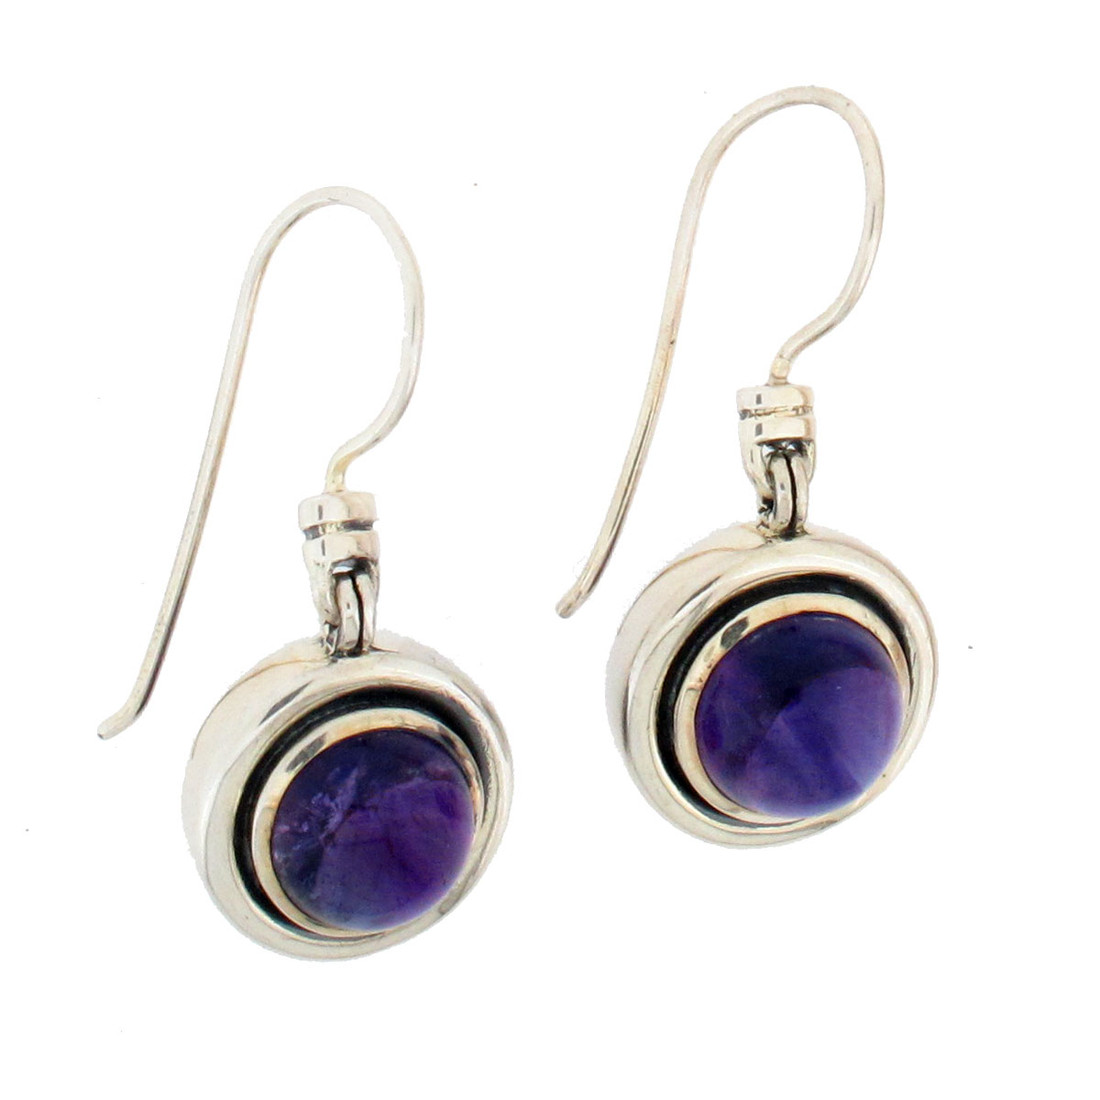 Round purple Amethyst sterling silver dangle earrings. 